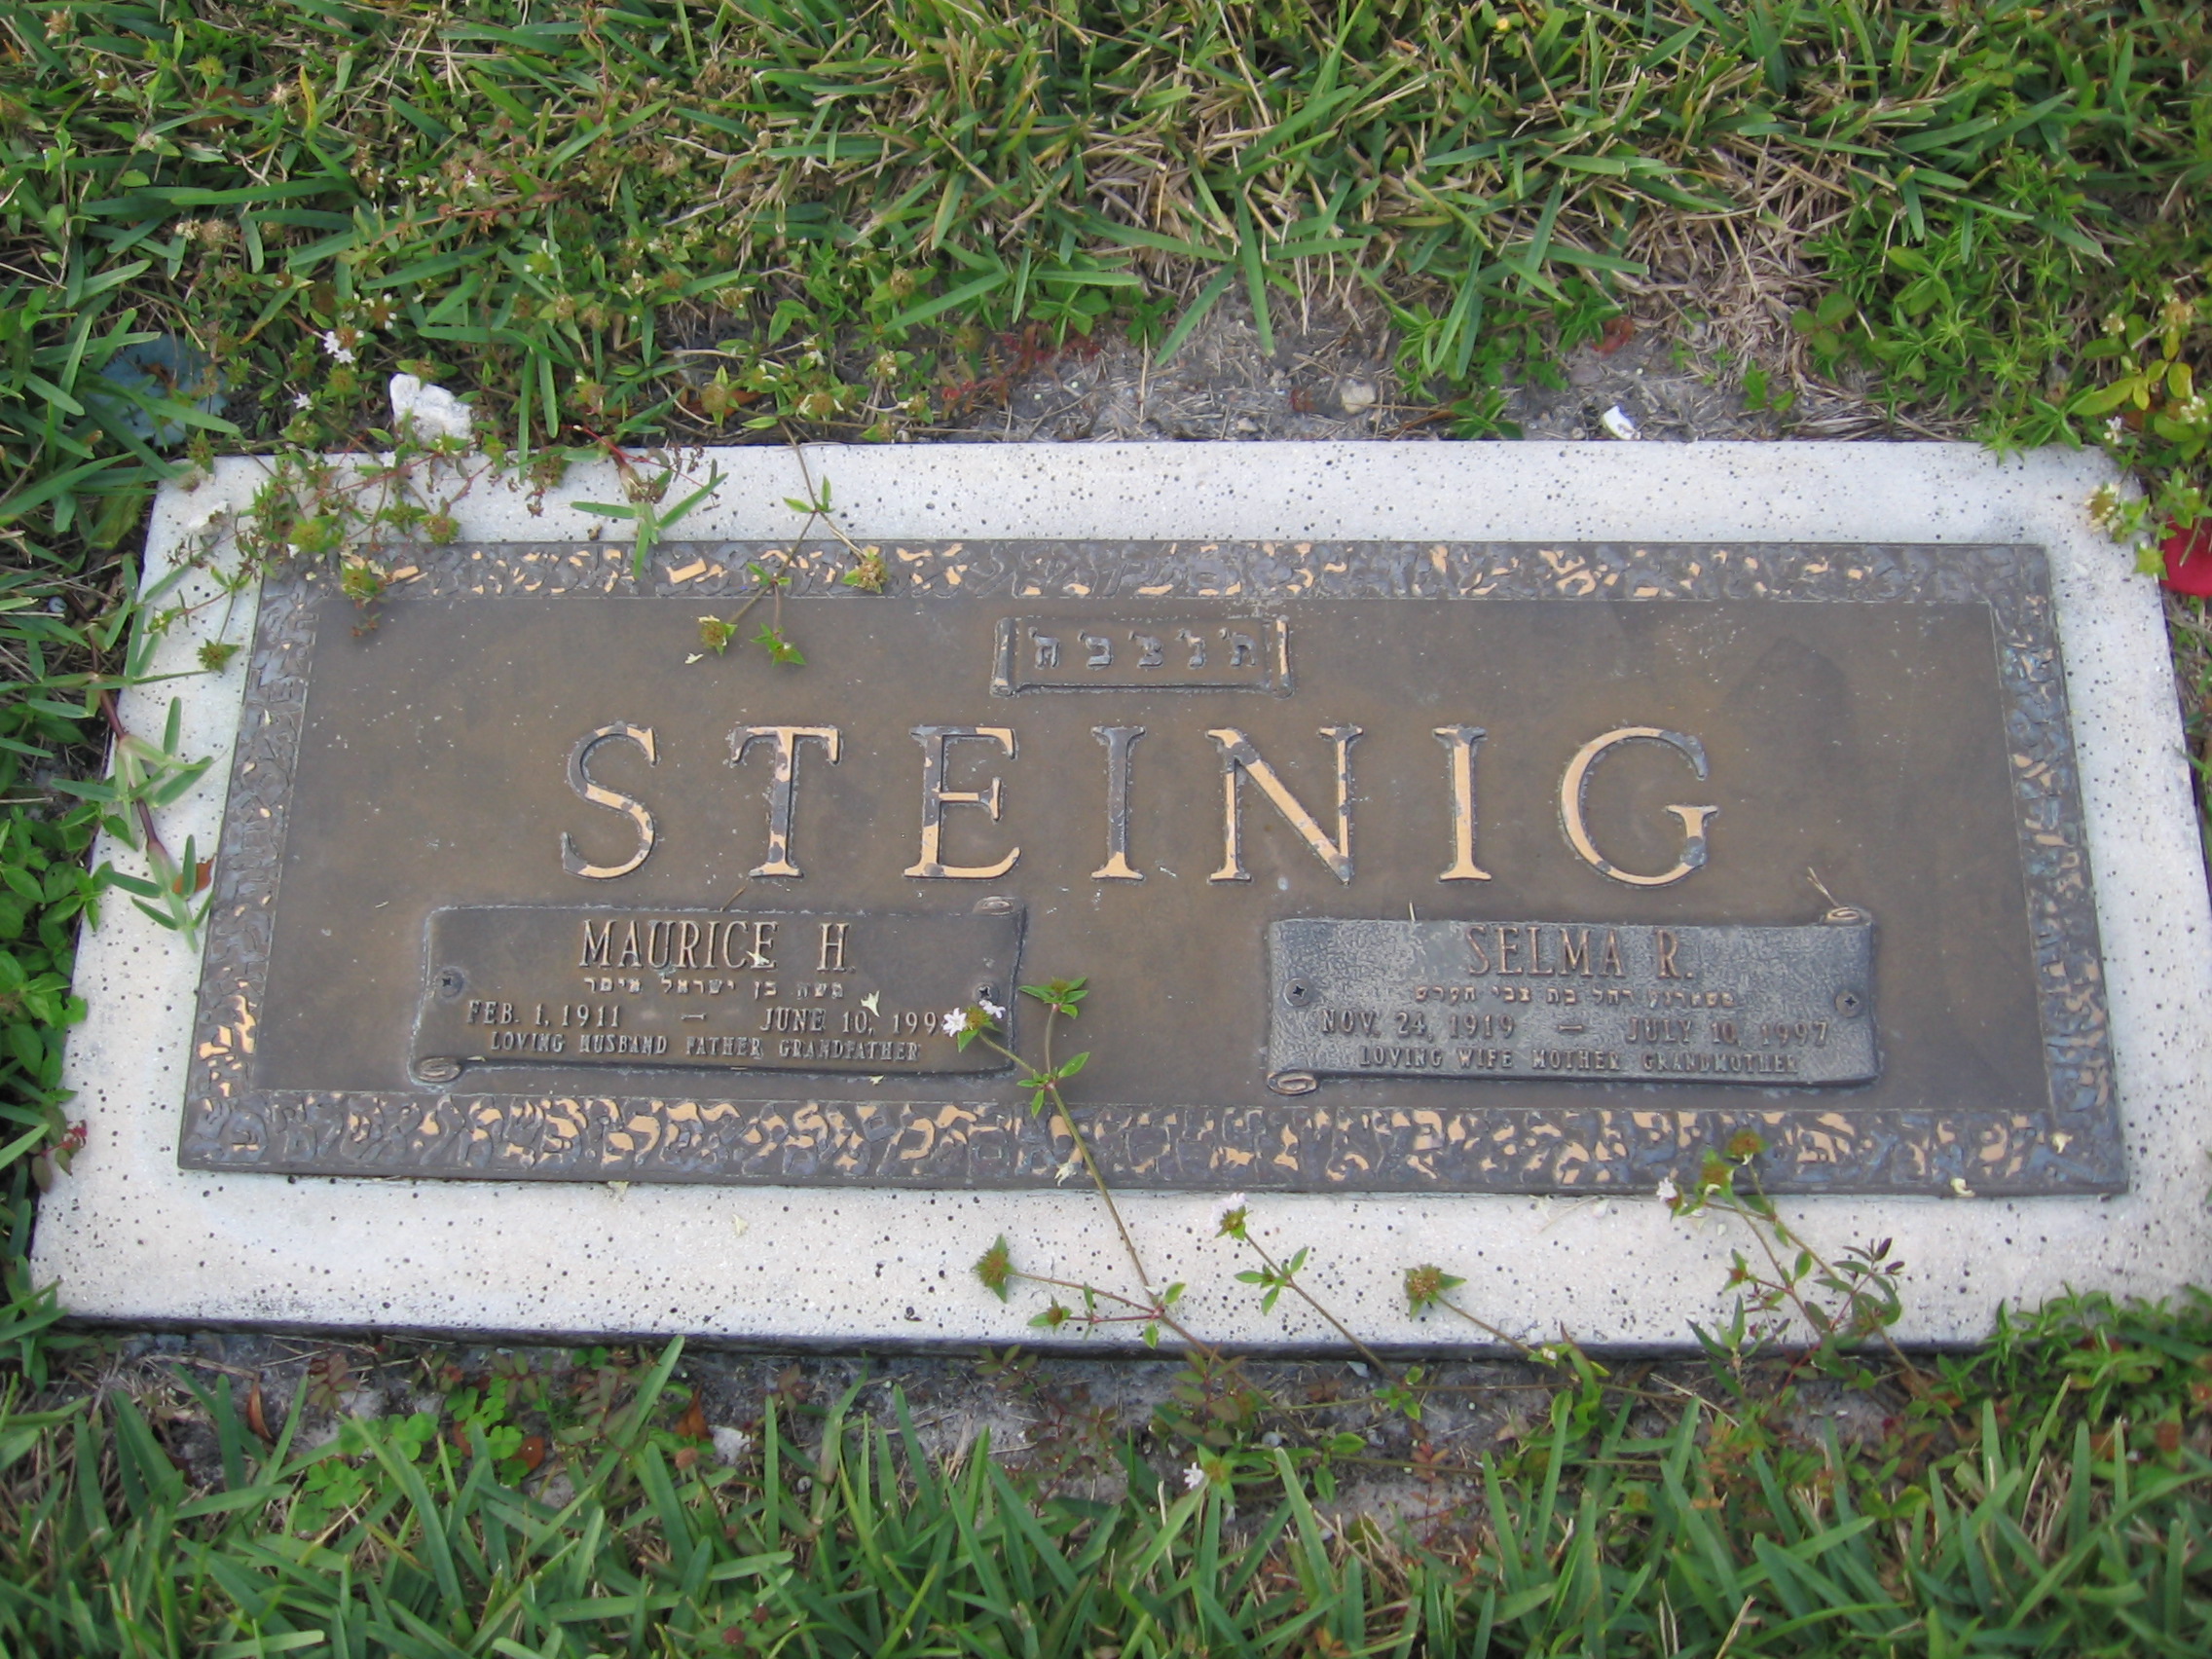 Maurice H Steinig